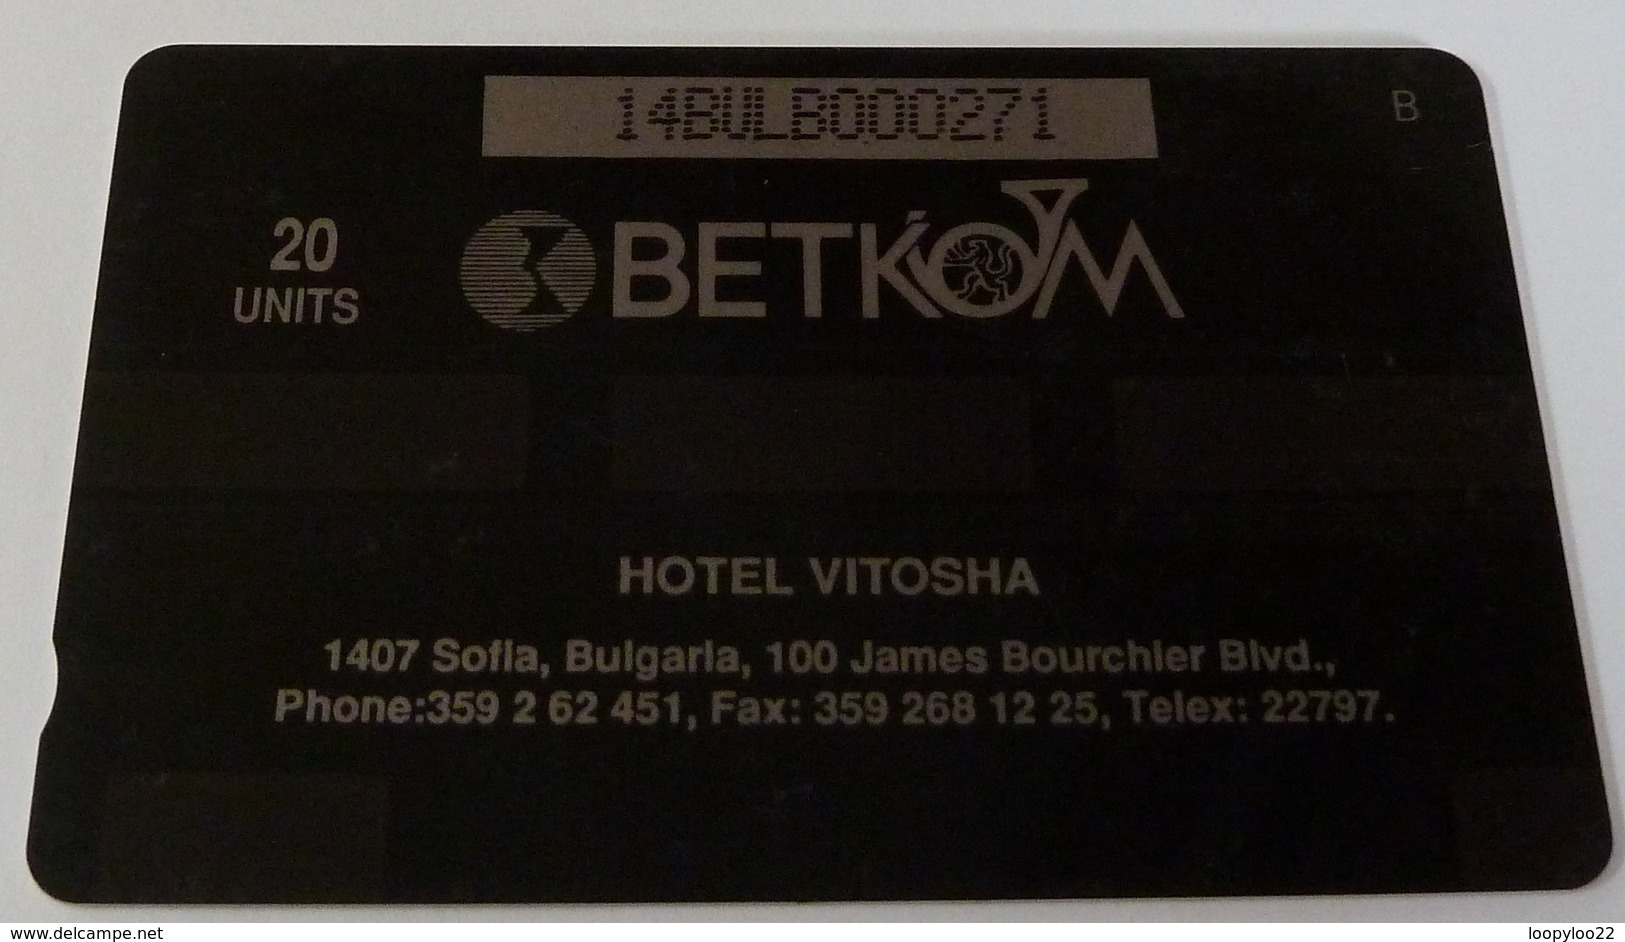 BULGARIA - GPT - B21 - 20 Units - Hotel Vitosha - 2000ex - 14BULB - 06.93 - Used - Bulgaria